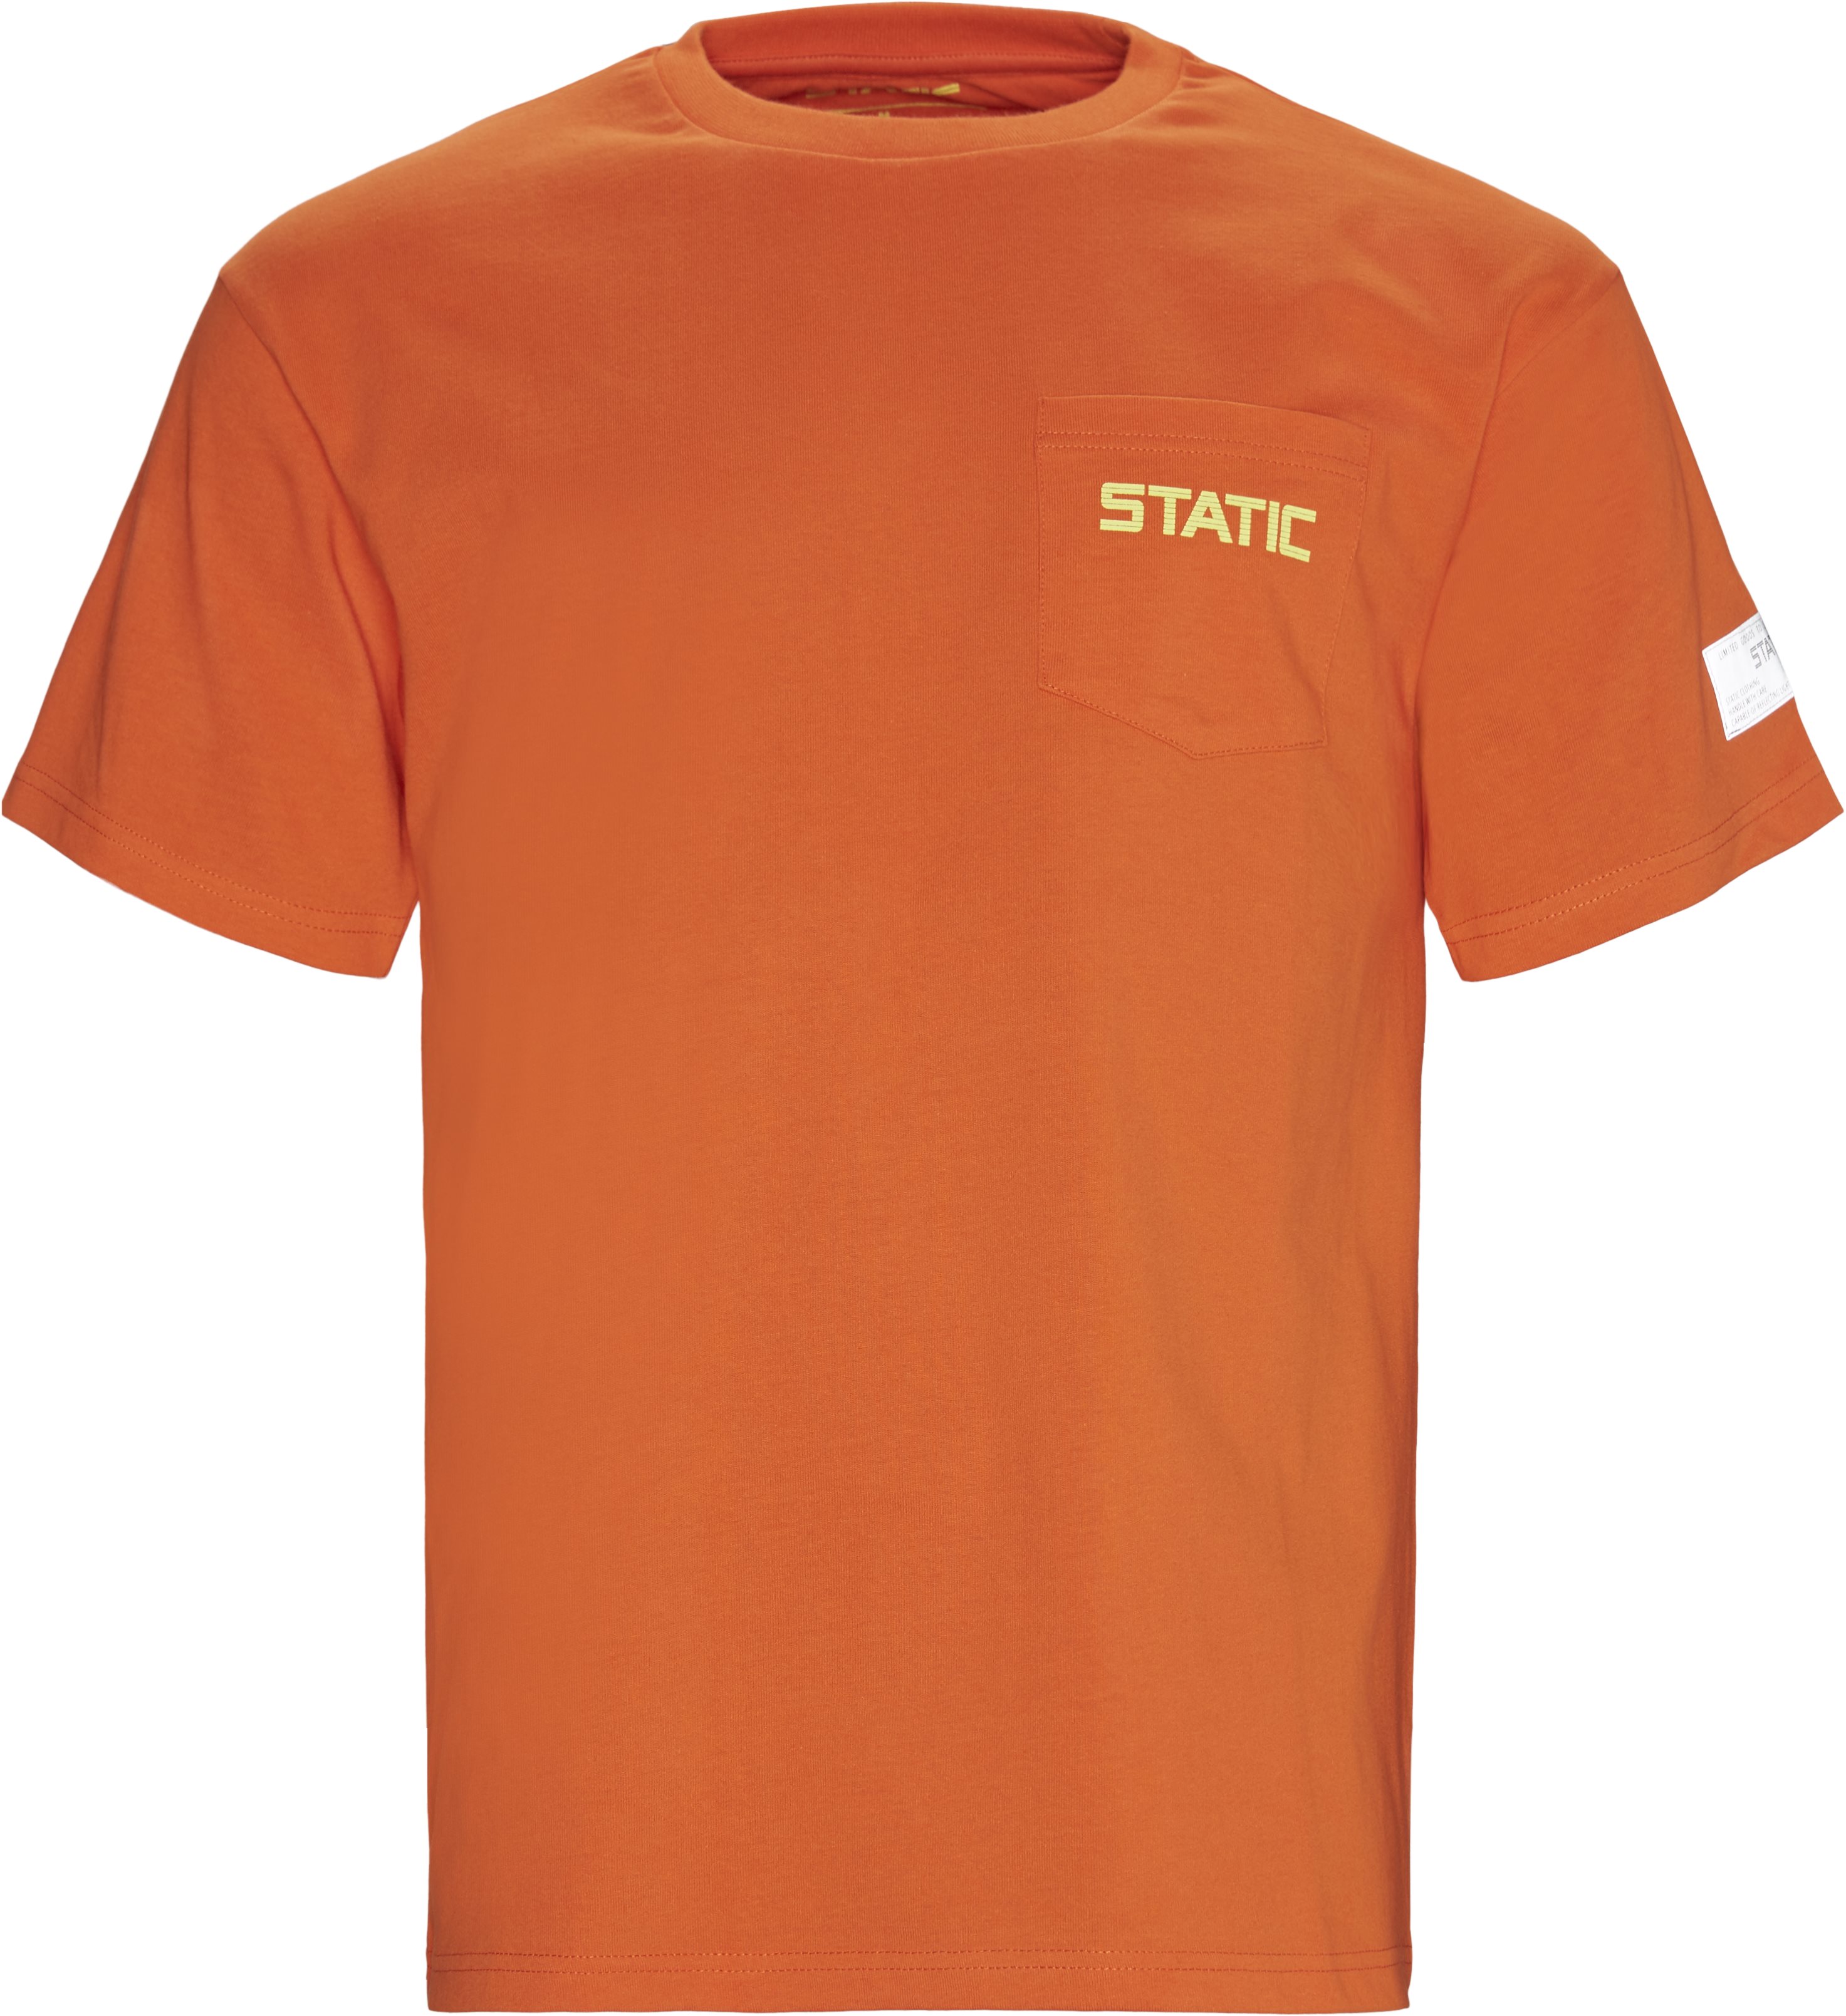 Jamalo Tee - T-shirts - Regular fit - Orange